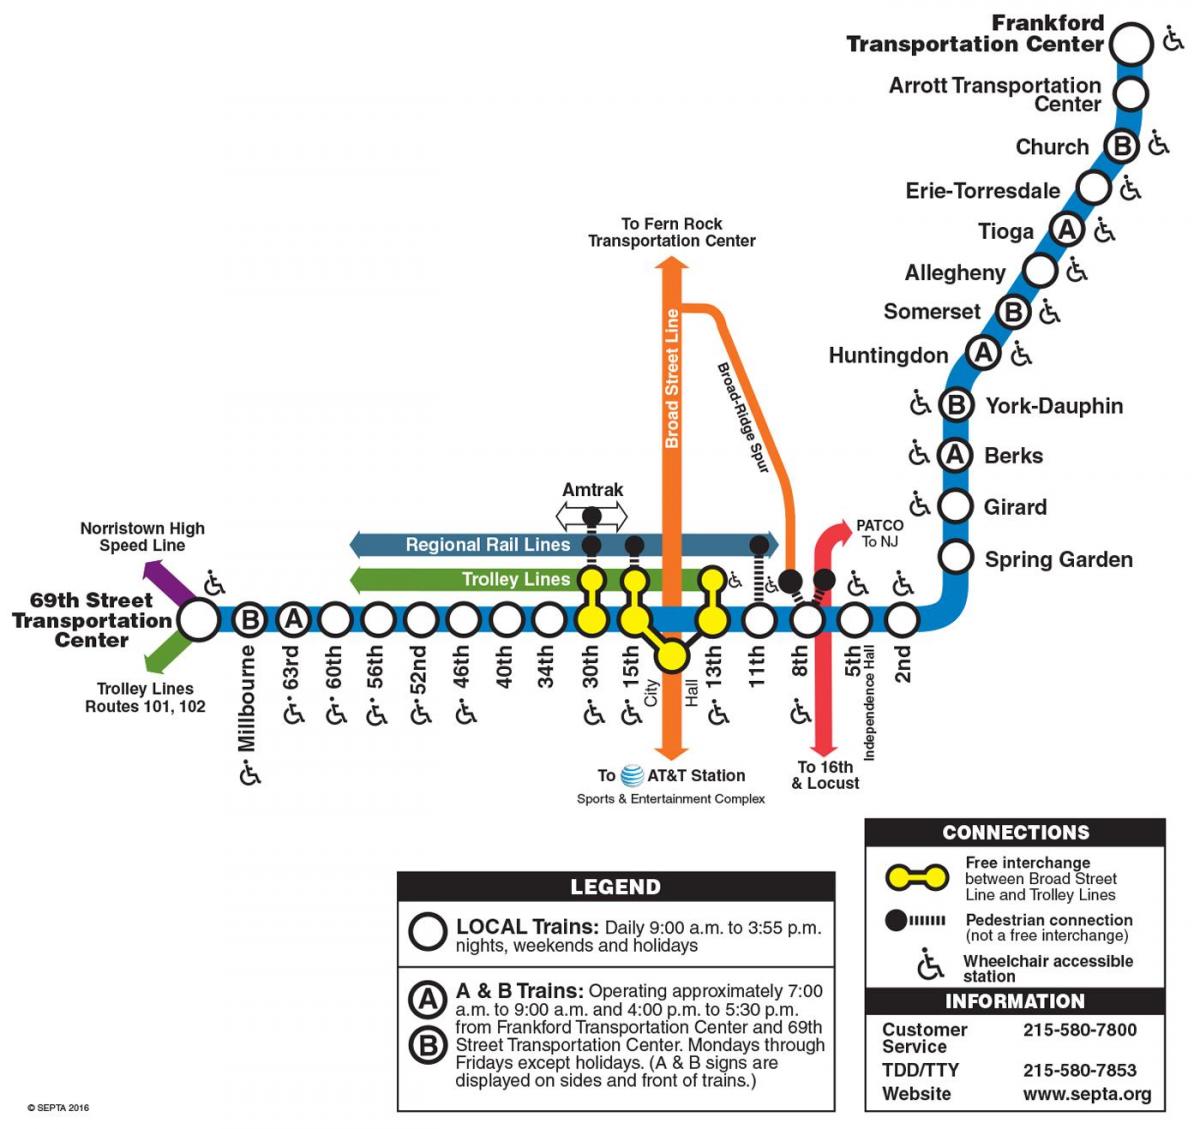 kort over markedet frankford line